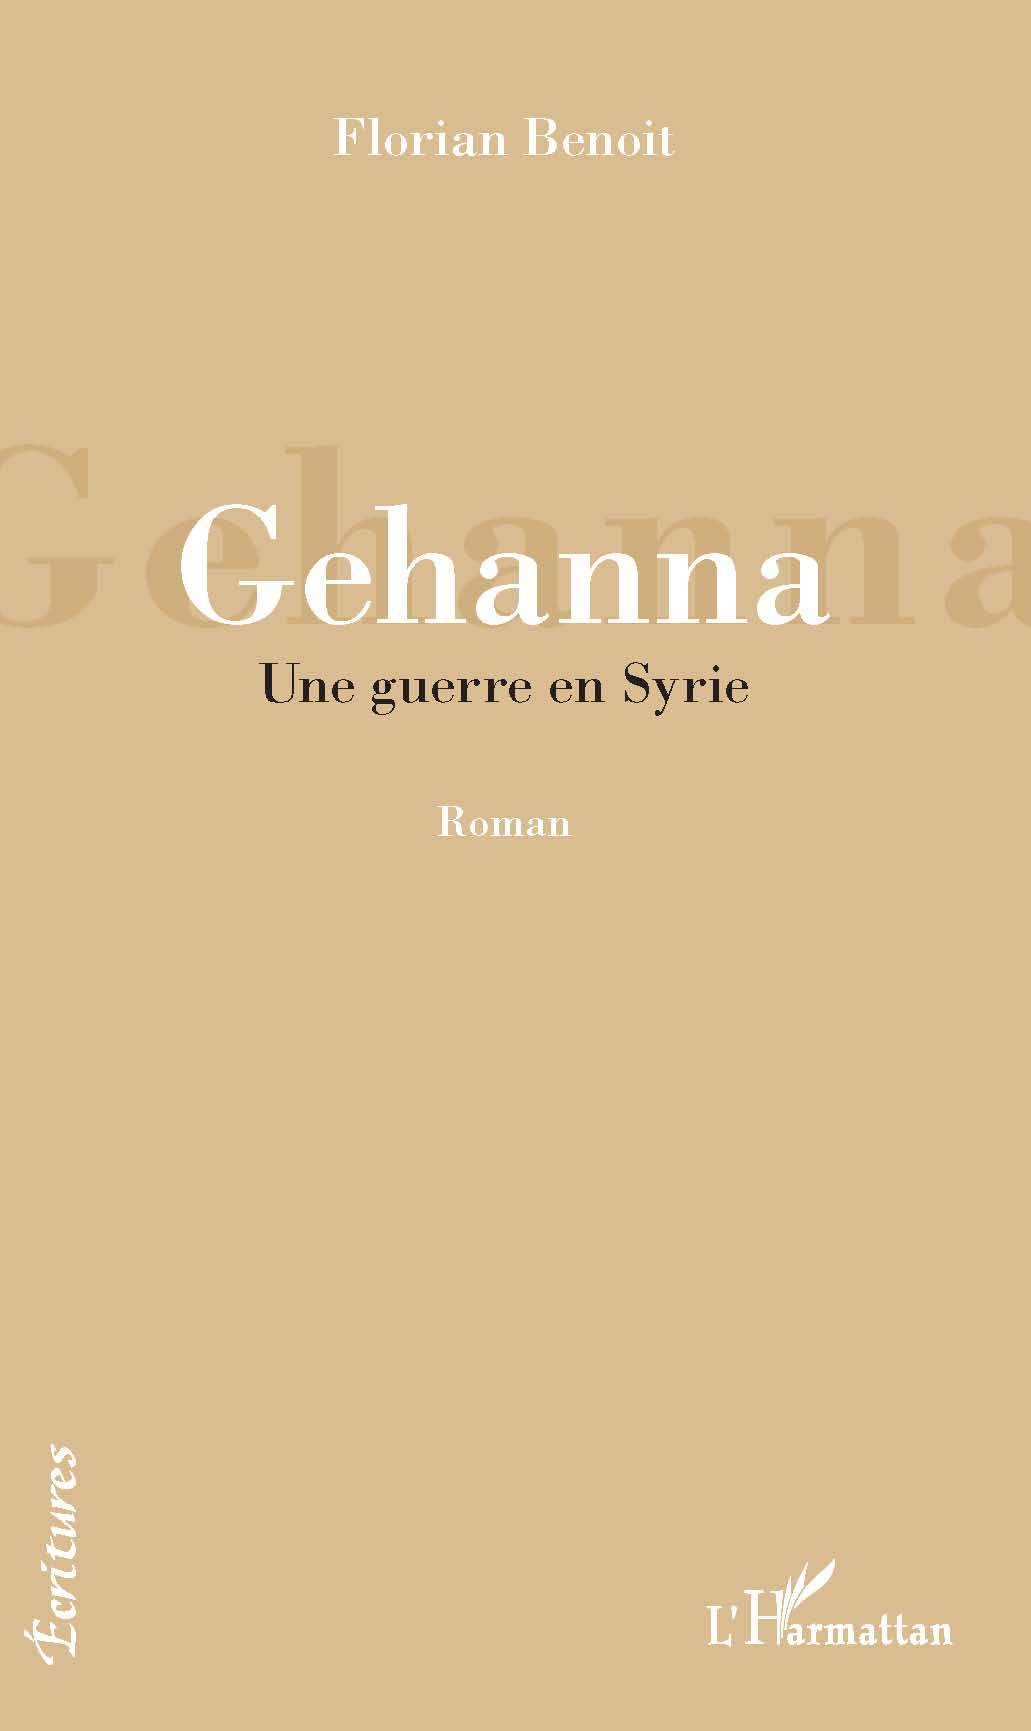 Gehanna, Une guerre en Syrie - Roman (9782343225654-front-cover)